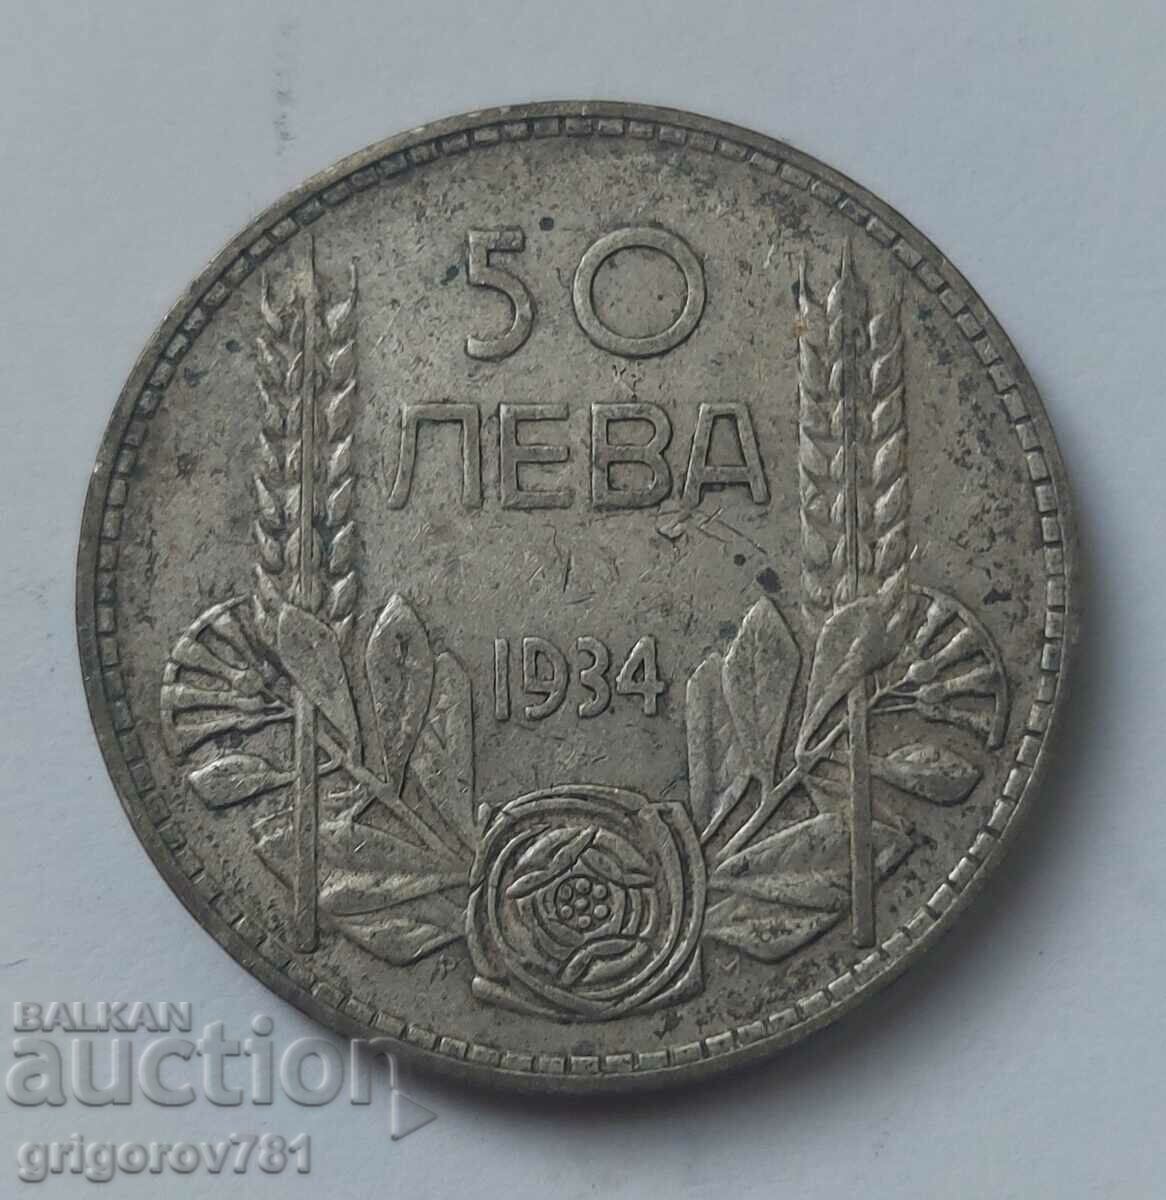 50 leva silver Bulgaria 1934 - silver coin #22